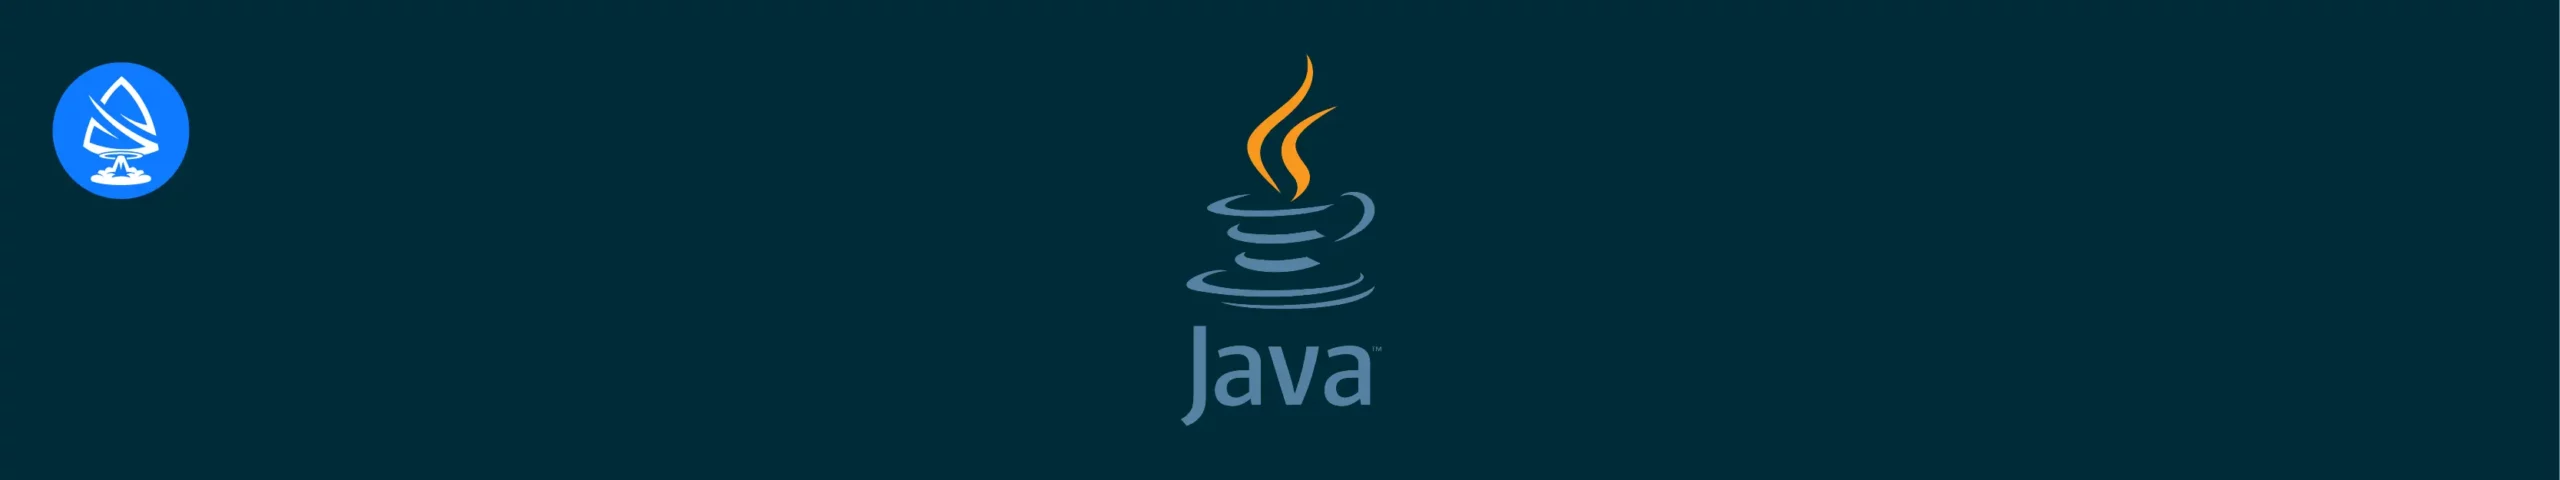 nodejs alternatives: Java